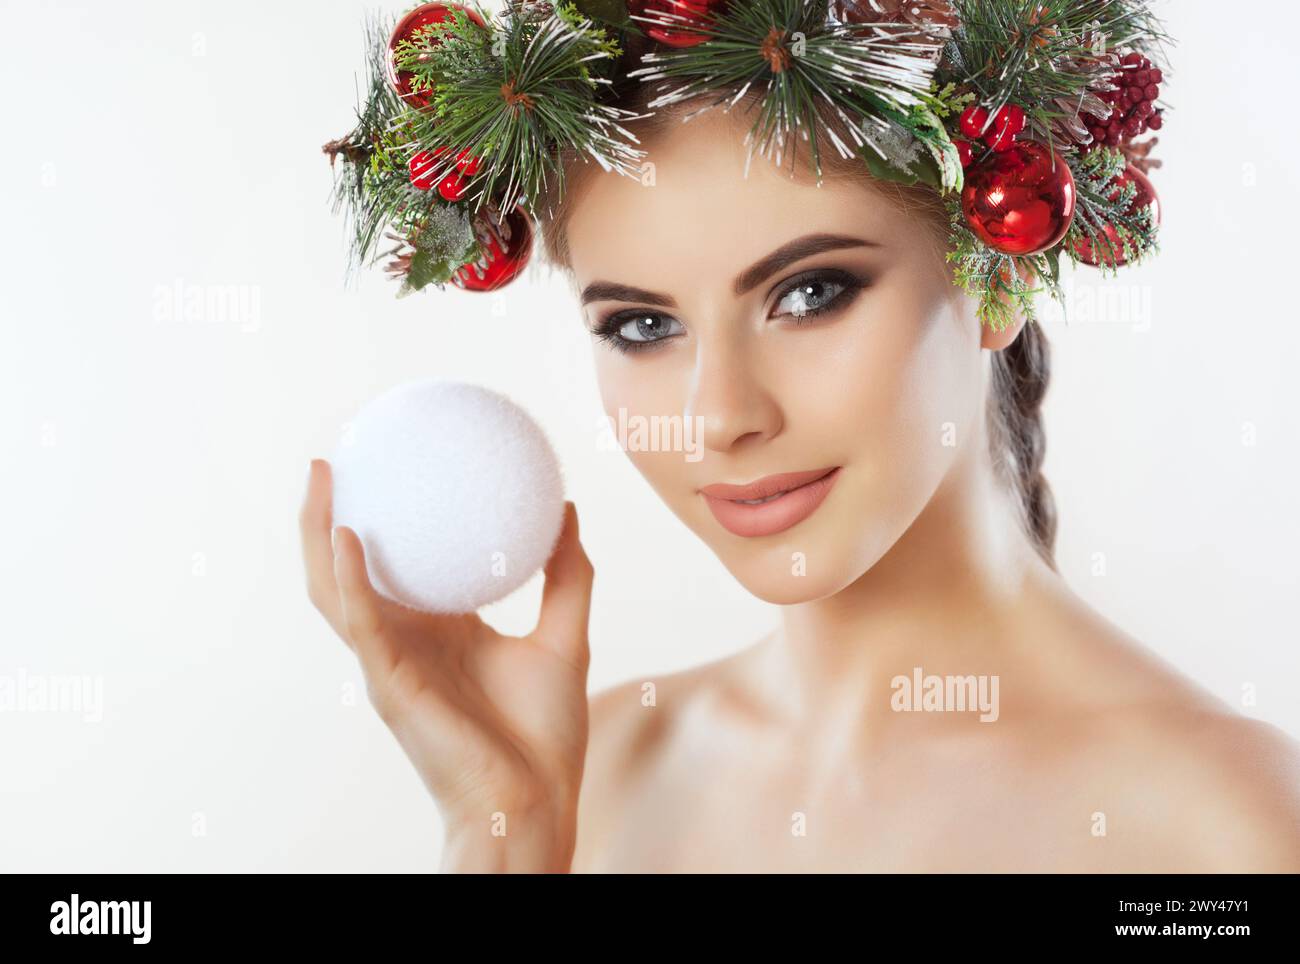 Une jolie jeune femme tient dans sa main une boule de Noël, sur sa tête une belle couronne d'épicéa avec des cônes et des boules. Concept du nouvel an. Banque D'Images